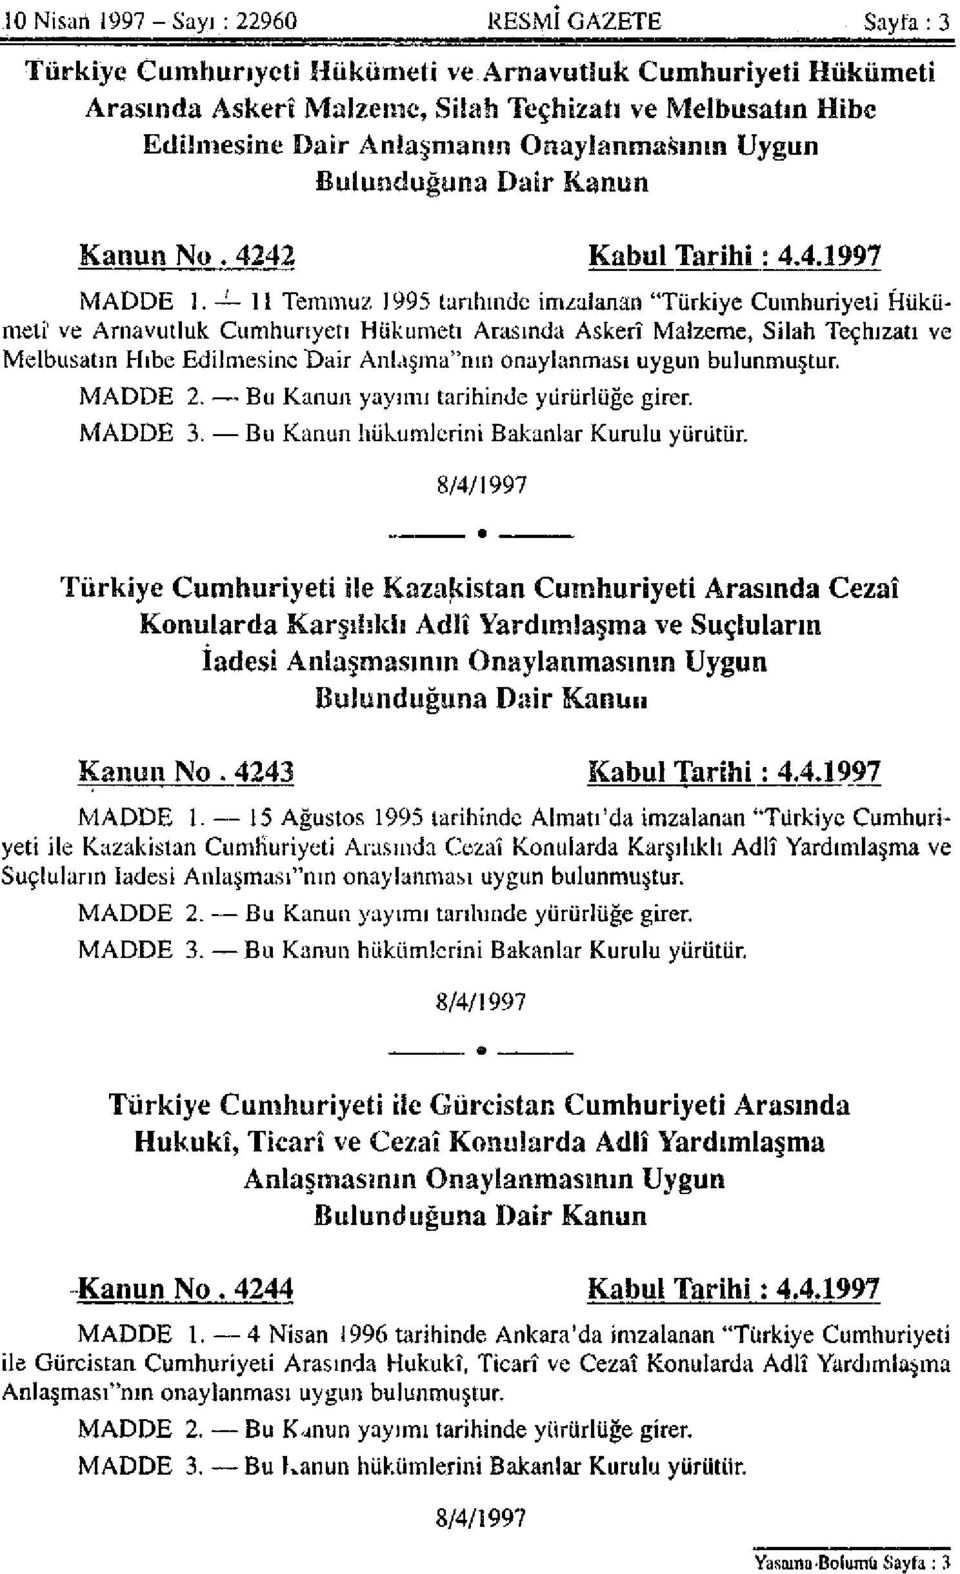 11 Temmuz 1995 tarihinde imzalanan "Türkiye Cumhuriyeti Hükümeti' ve Arnavutluk Cumhuriyeti Hükümeti Arasında Askerî Malzeme, Silah Teçhizatı ve Melbusatın Hibe Edilmesine Dair Anlaşma"nın